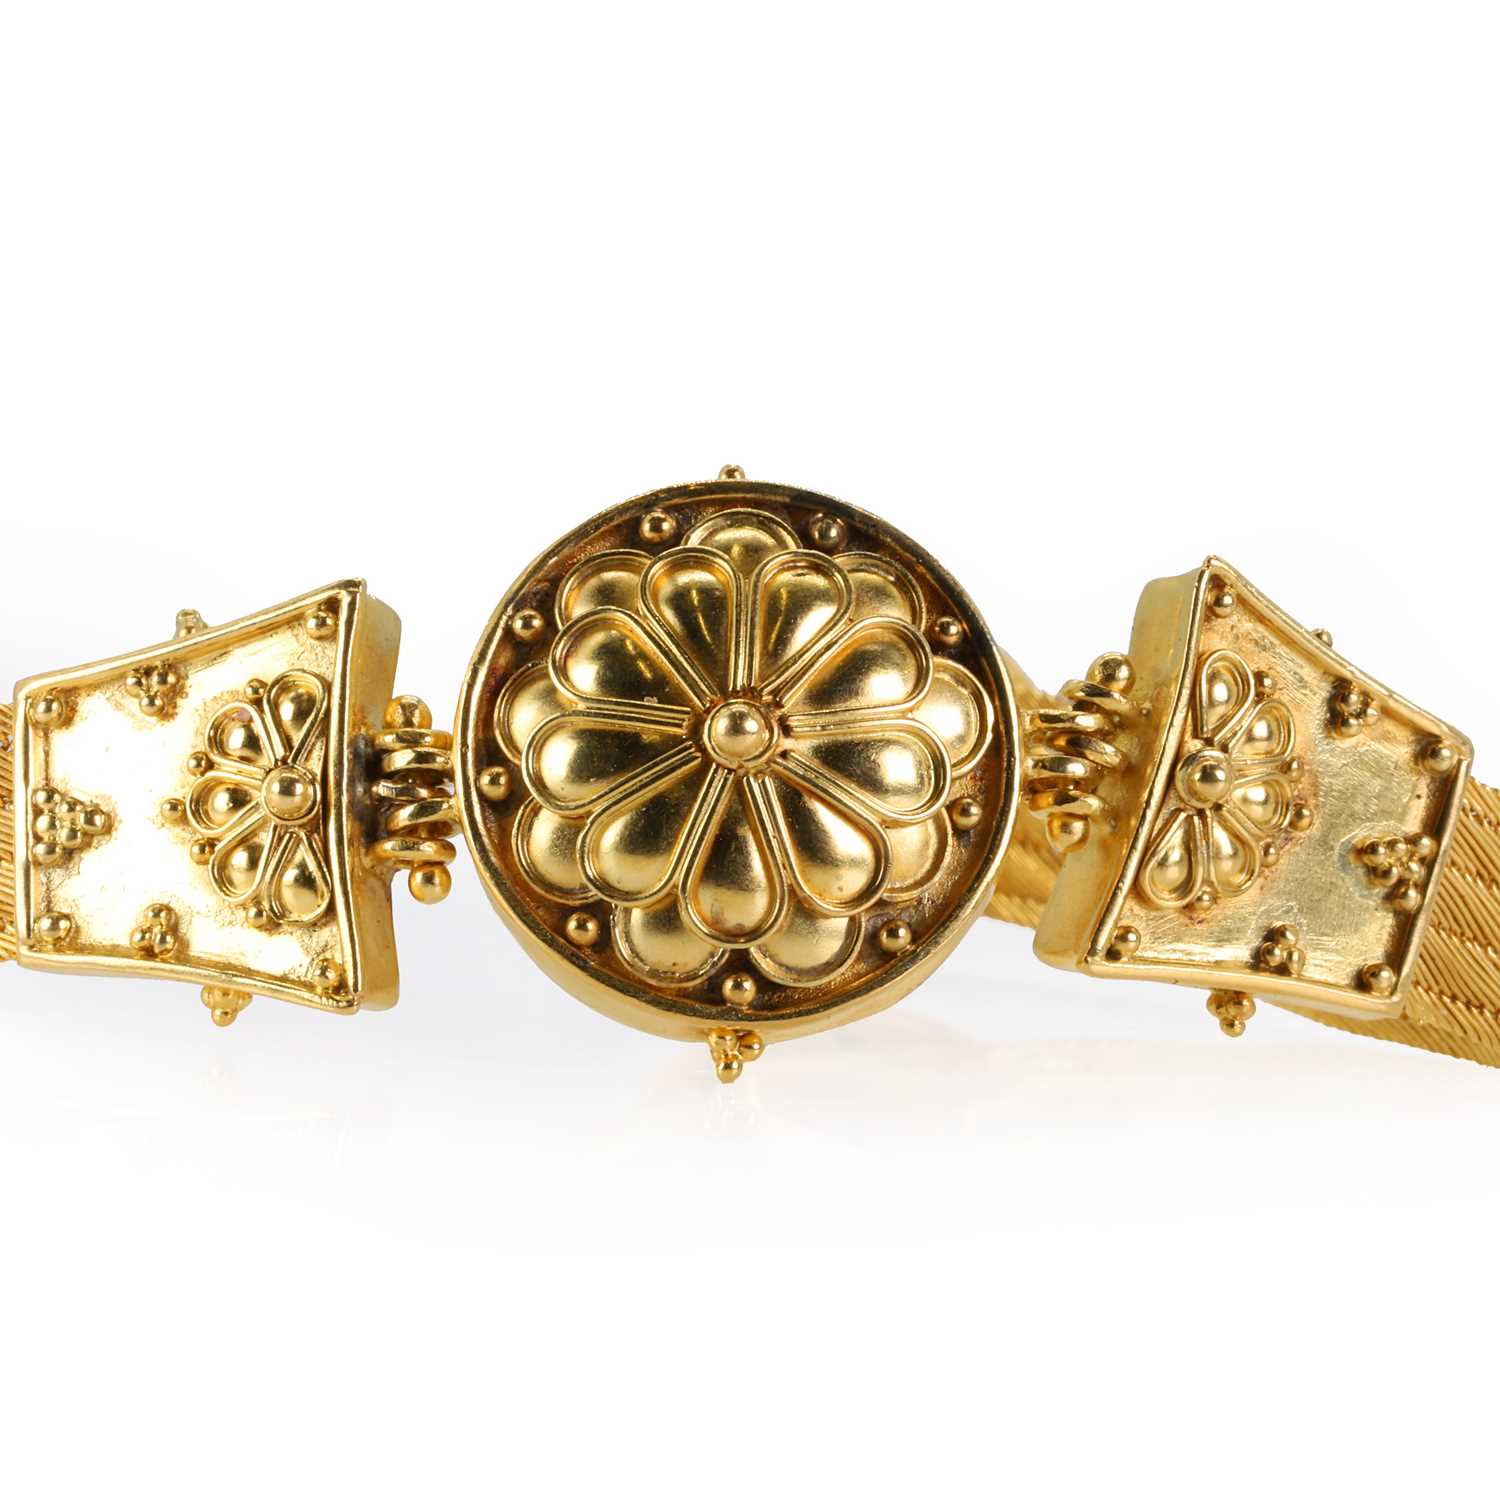 A high carat gold bracelet, - Image 3 of 3